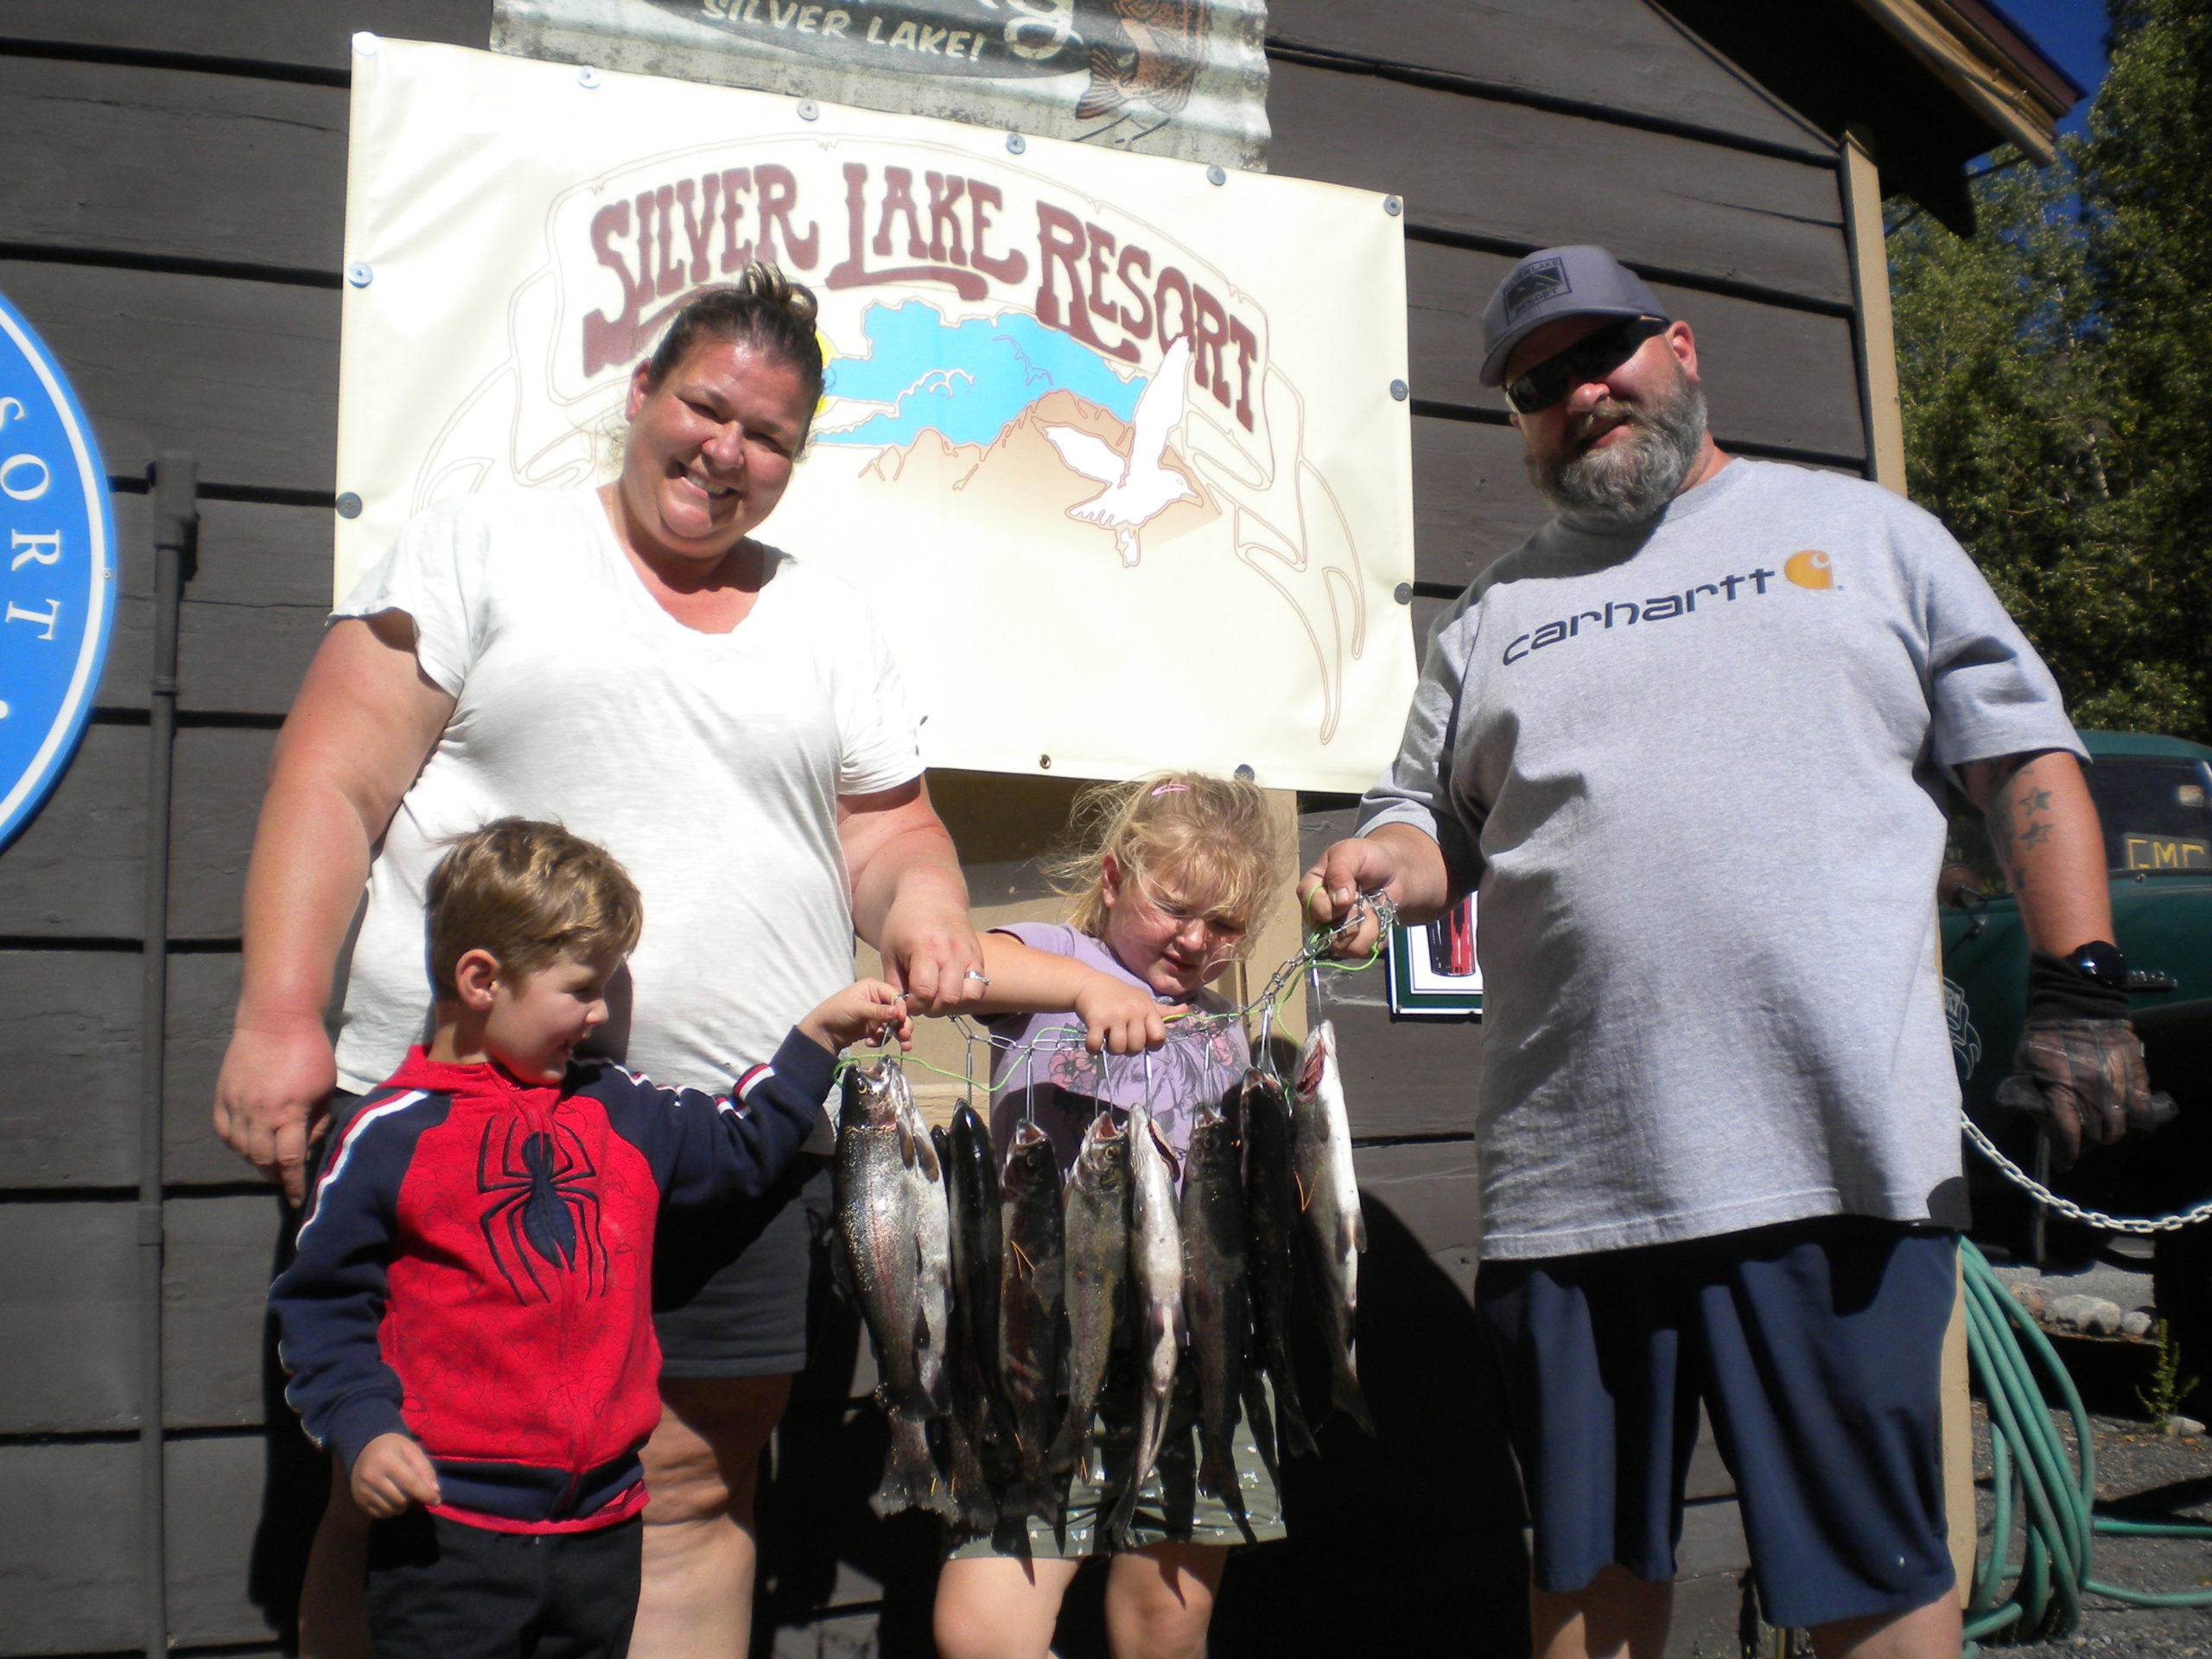 Silver Lake Resort Fishing Pictures 7/24 - 7/31/21 - Silver Lake Resort